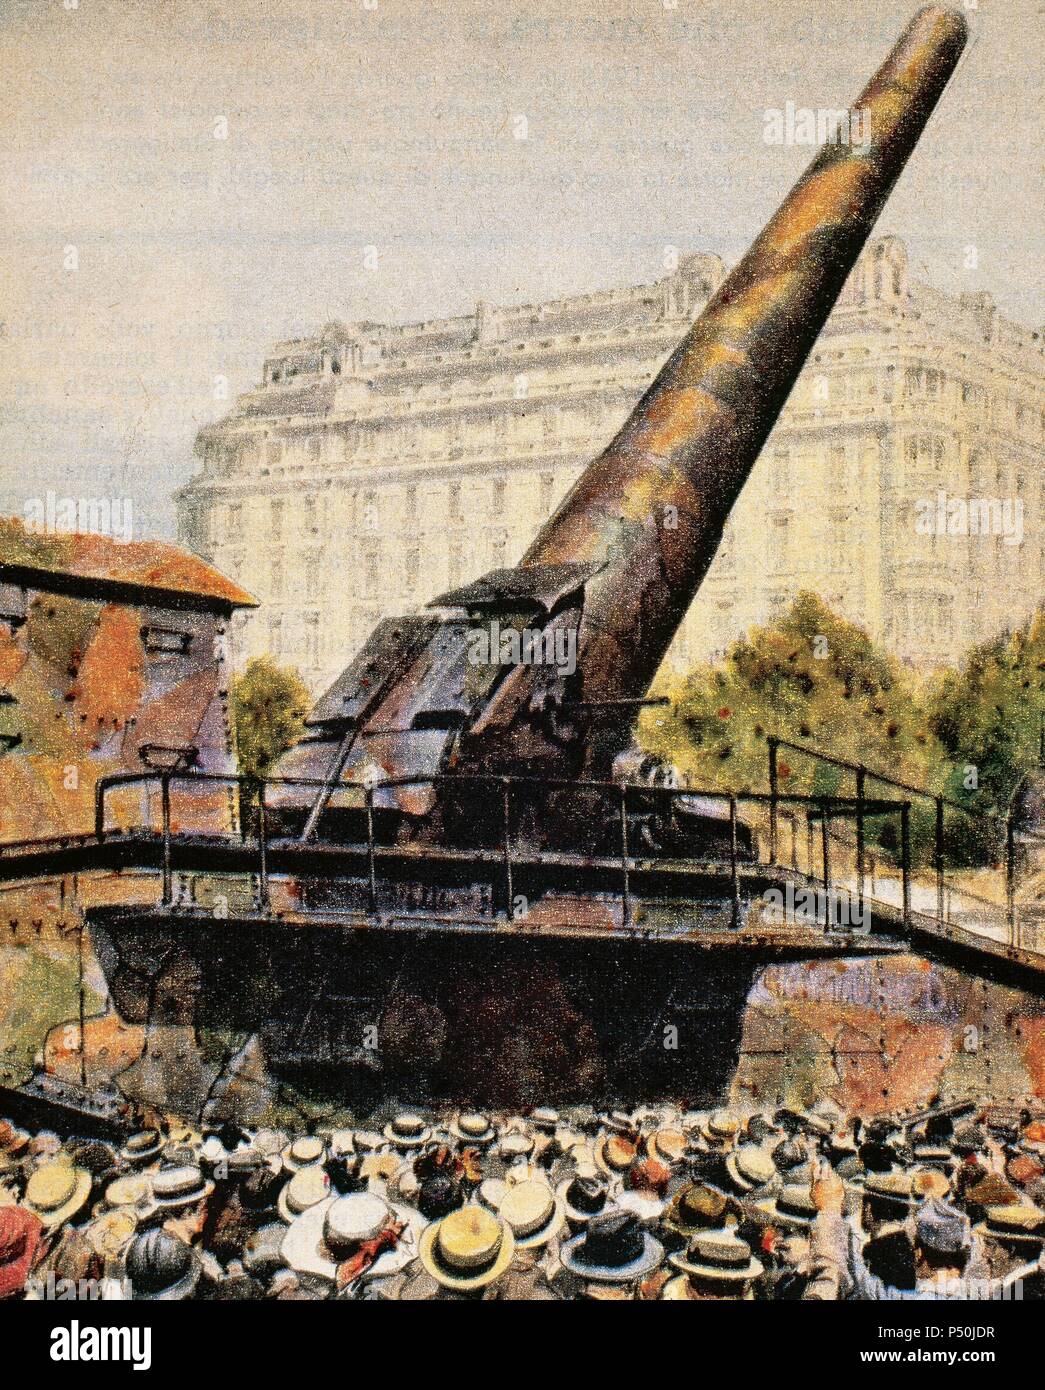 PRIMERA GUERRA MUNDIAL (1914-1918). GRAN BERTHA M42. Pieza de artillería alemana utilizada para bombardear París en 1918. Fabricada por Krupp y diseñada por el ingeniero Rausenberger. La Domenica del Corriere (1918) . Stock Photo